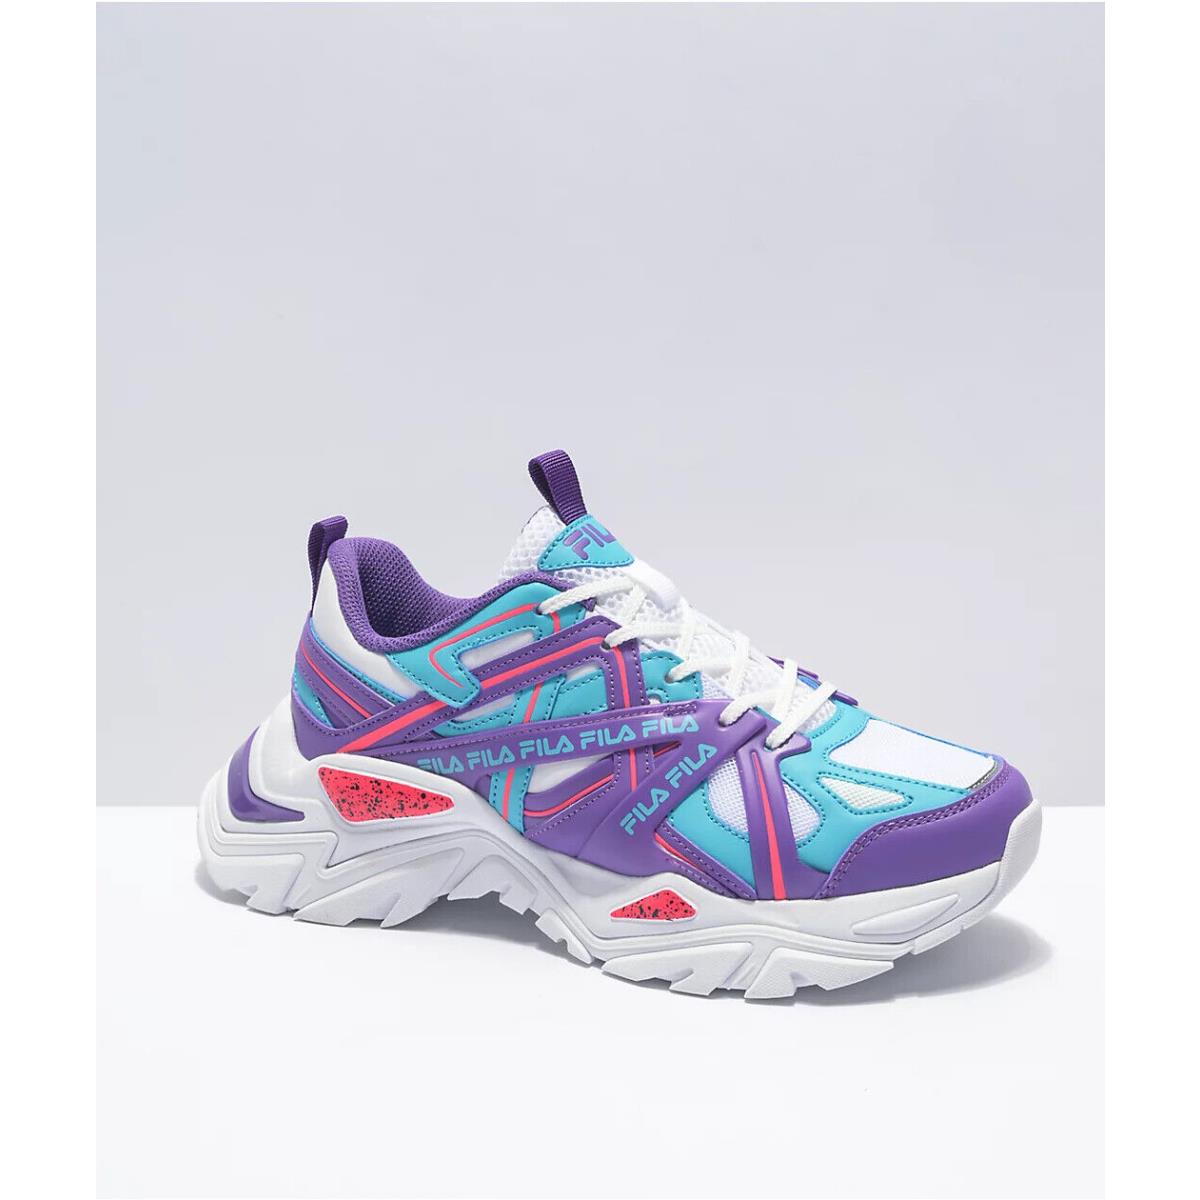 Fila Electrove 2 Youth / Kids - White/purple/scuba - Shoe Sneaker Size 4.5 4.5Y